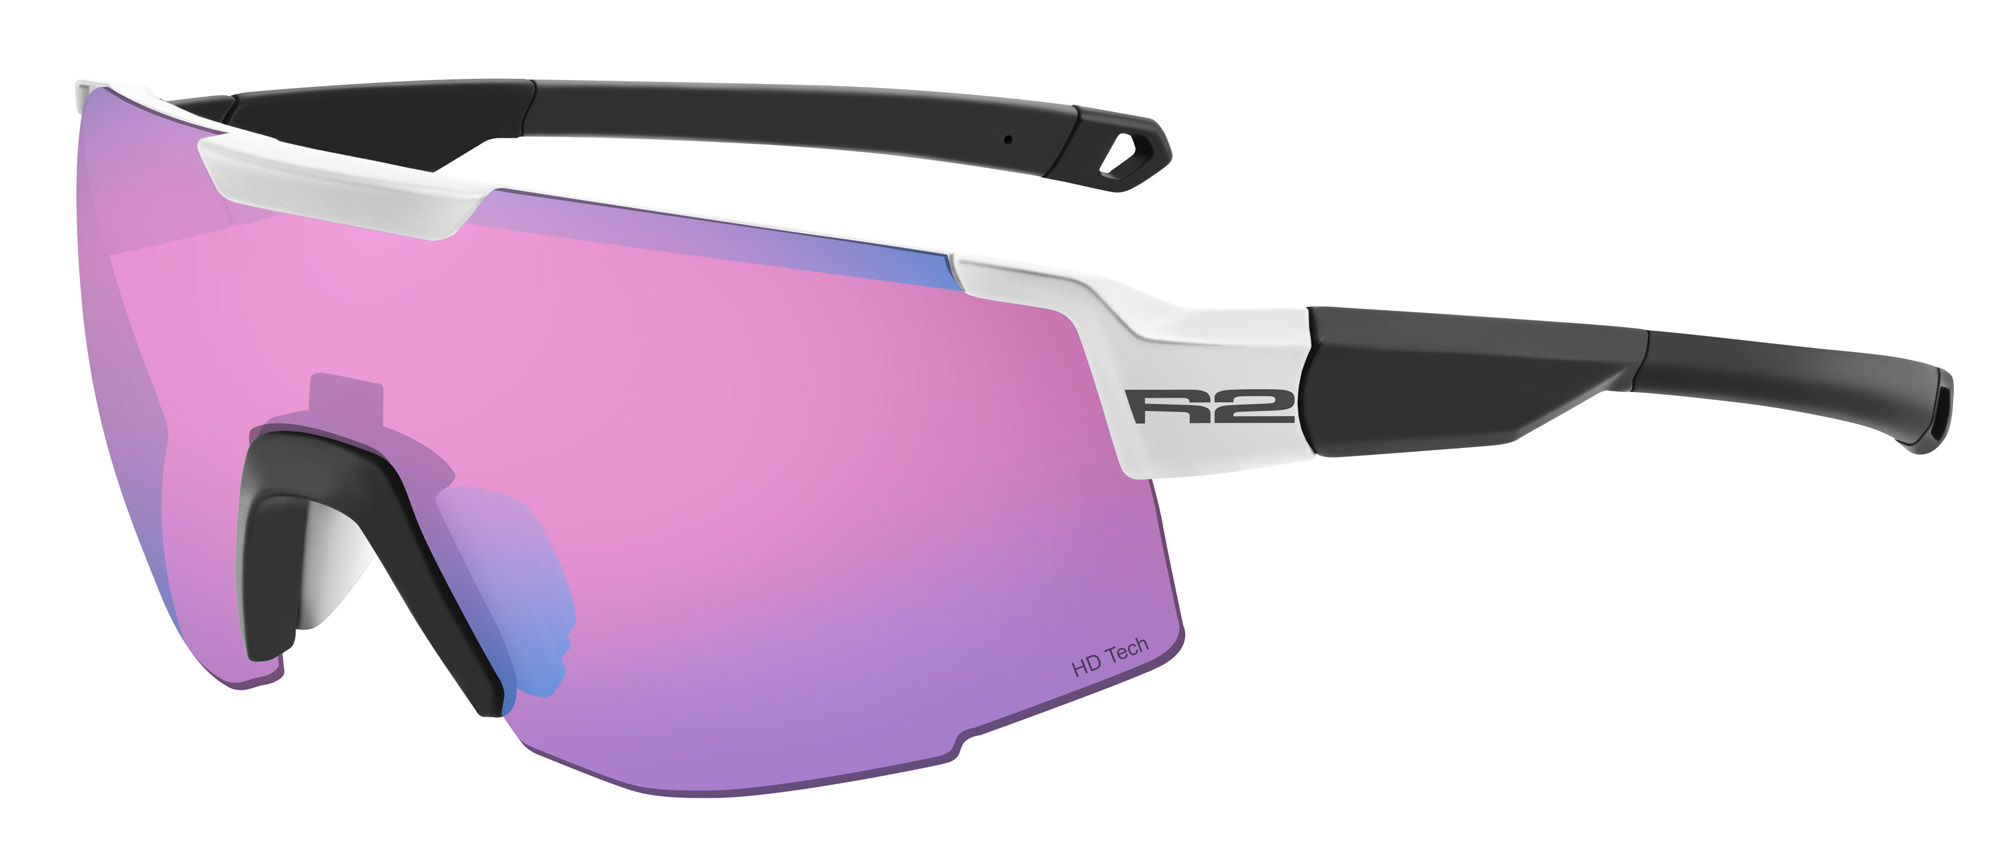 HD sport sunglasses R2 EDGE AT101B